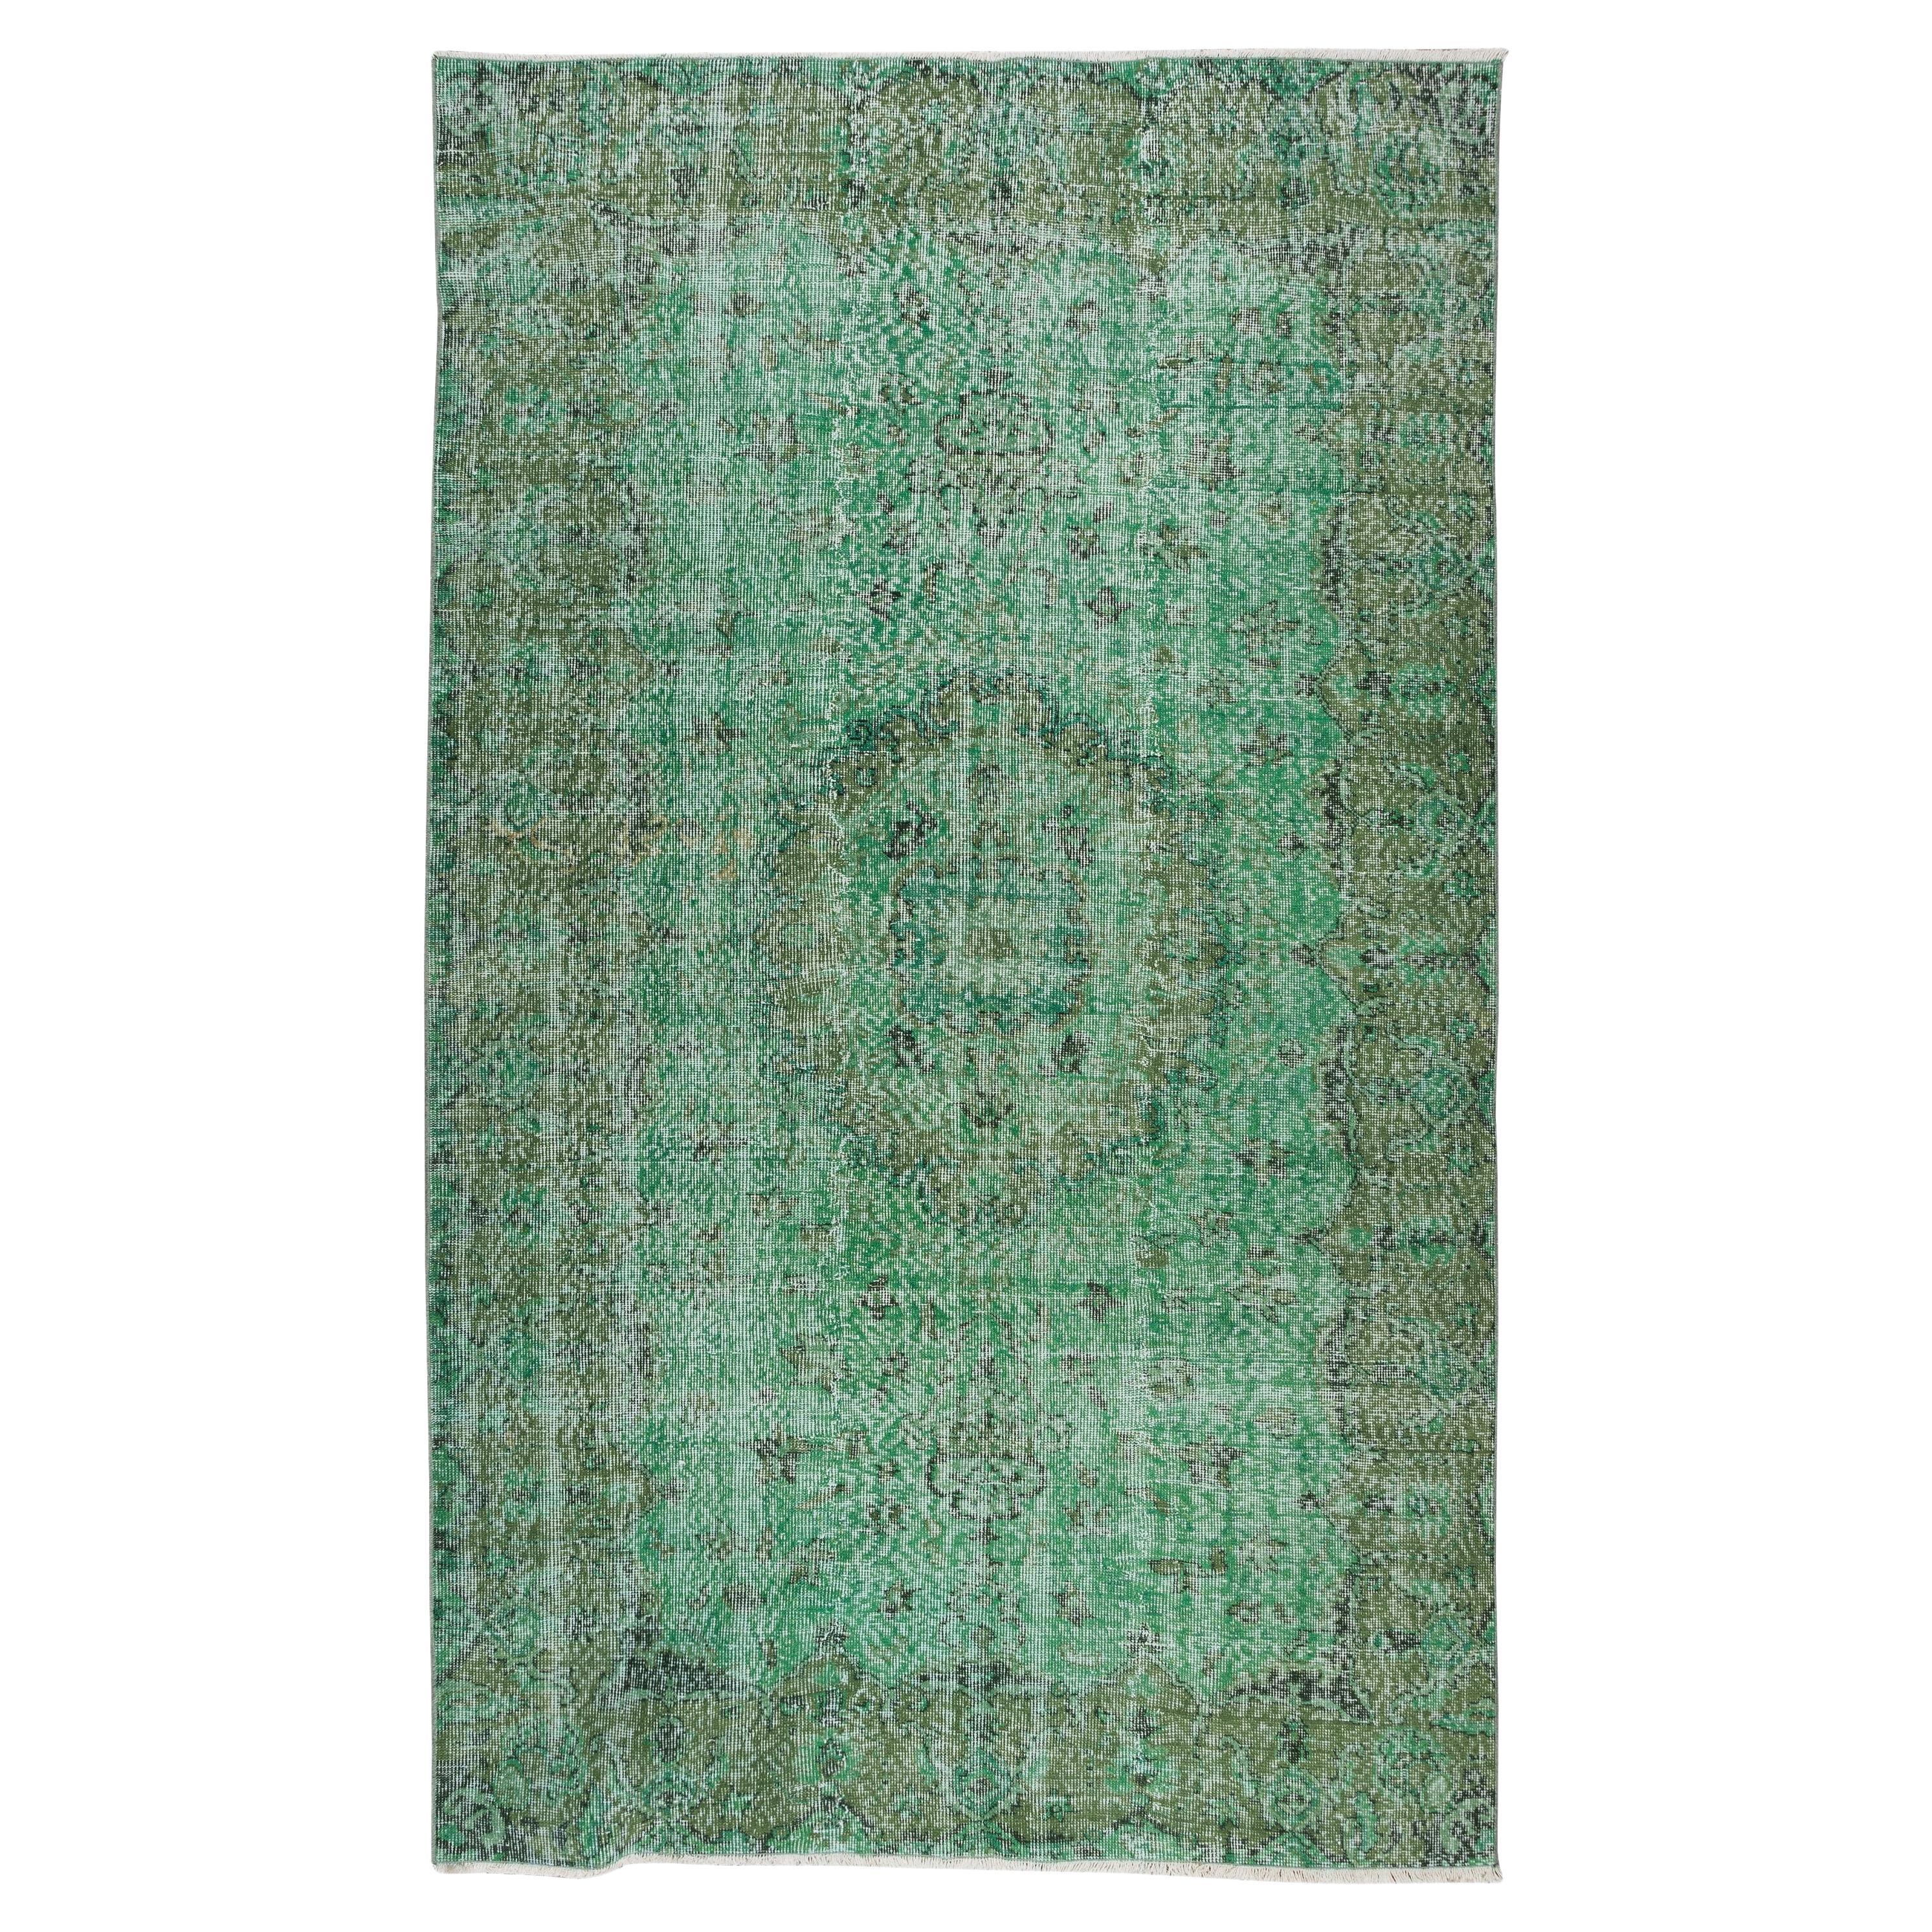 5.6x9,5 Ft Handgefertigter türkischer Vintage-Teppich in Grün, überzogen, für moderne Inneneinrichtung